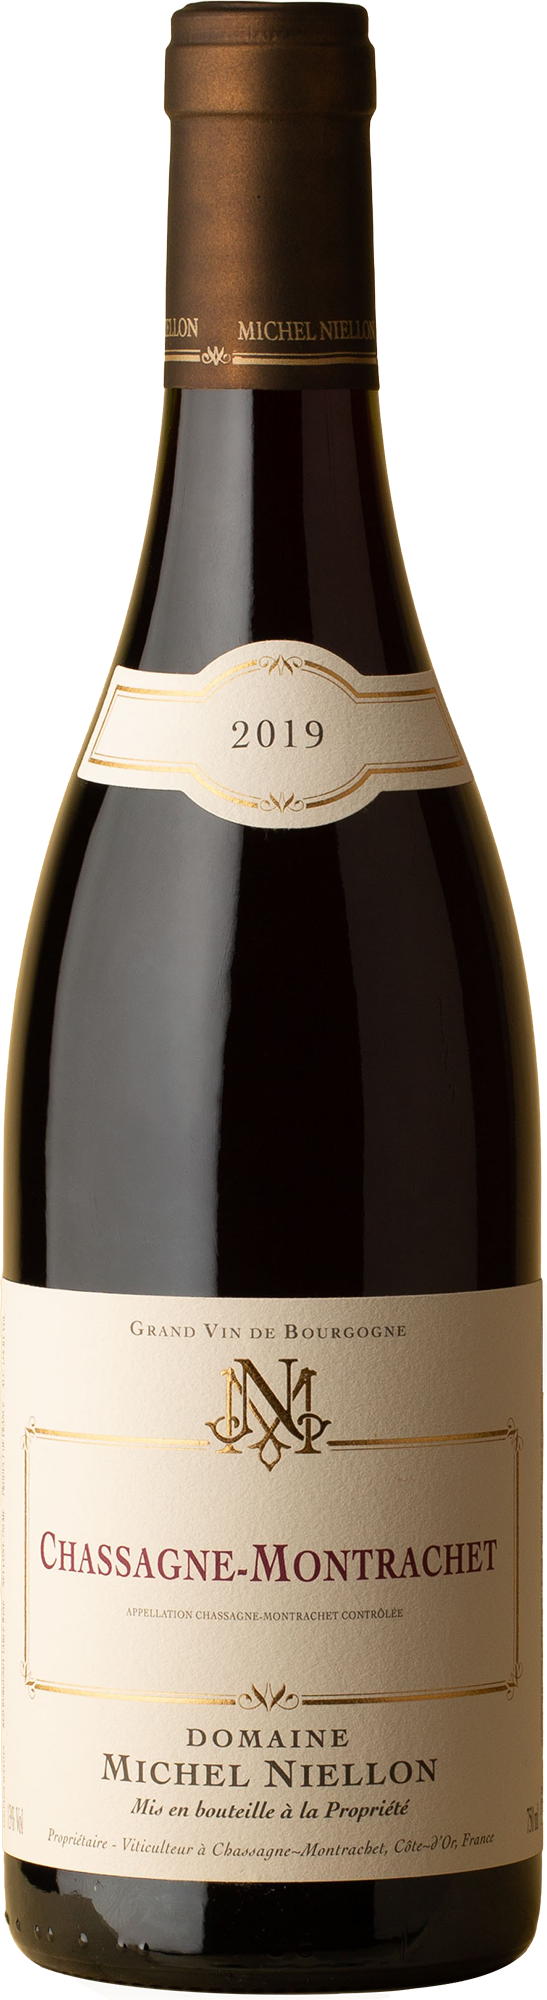 Domaine Michel Niellon - Chassagne-Montrachet Pinot Noir 2019 Red Wine